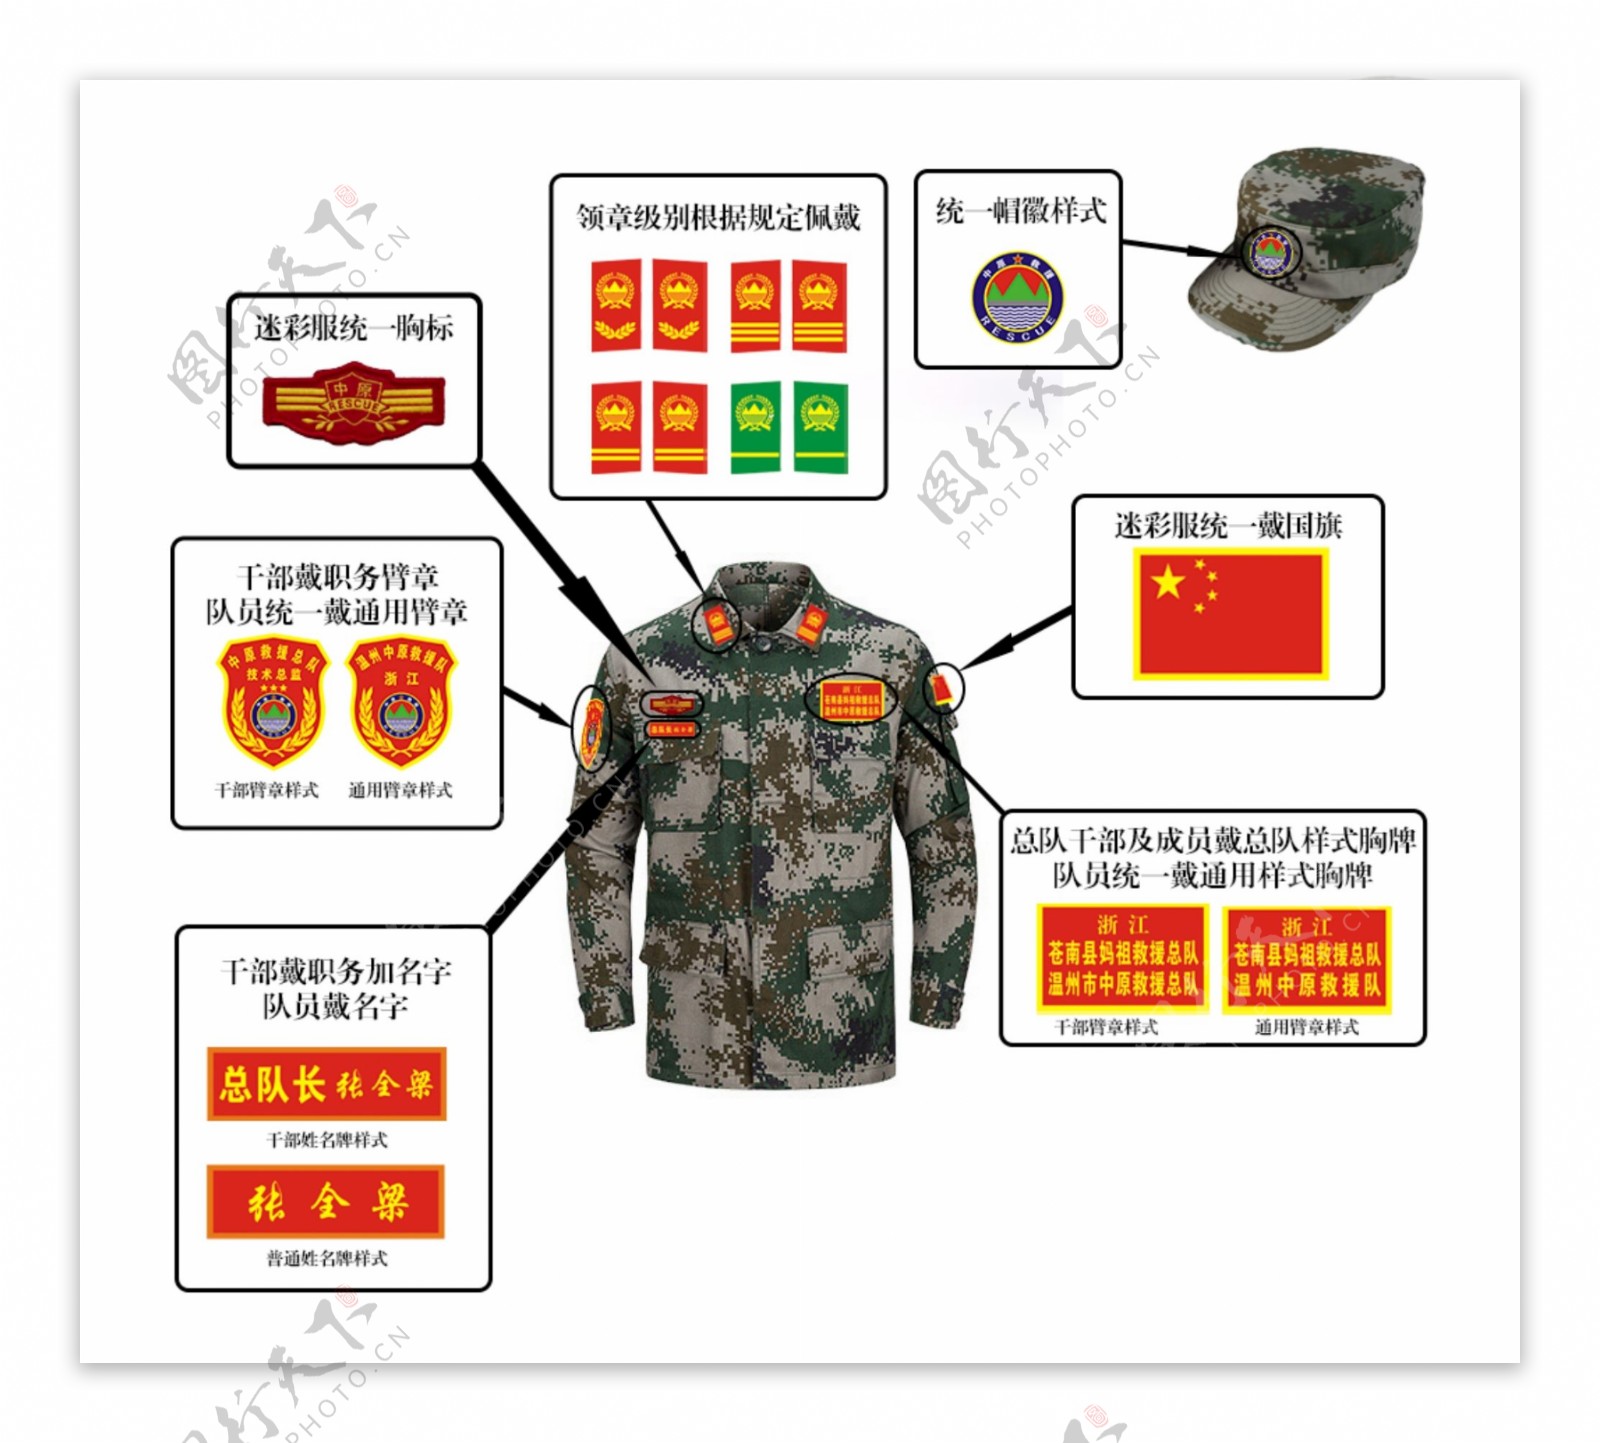 民间救援队迷彩服标志标识系统